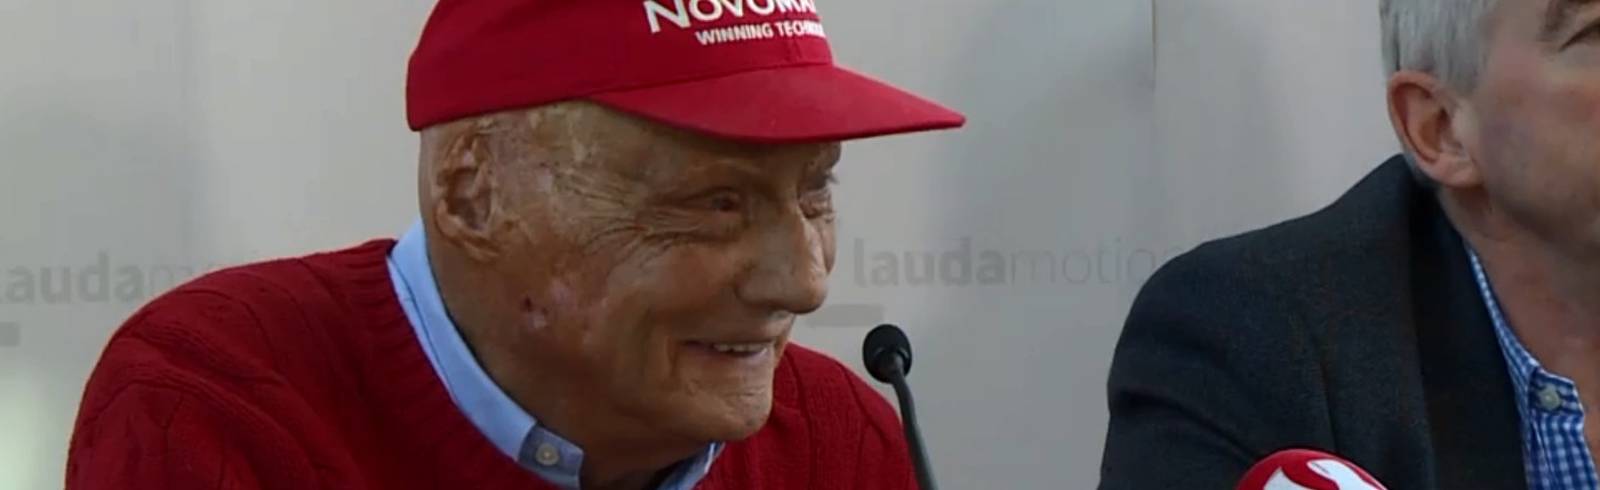 Niki Lauda ist tot